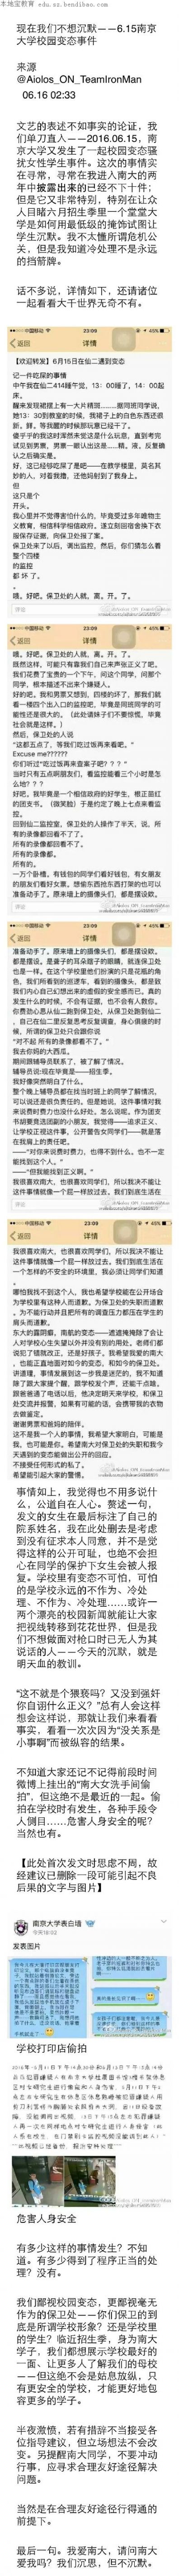 南京大学6月校园变态事件频发 学生不愿再沉默